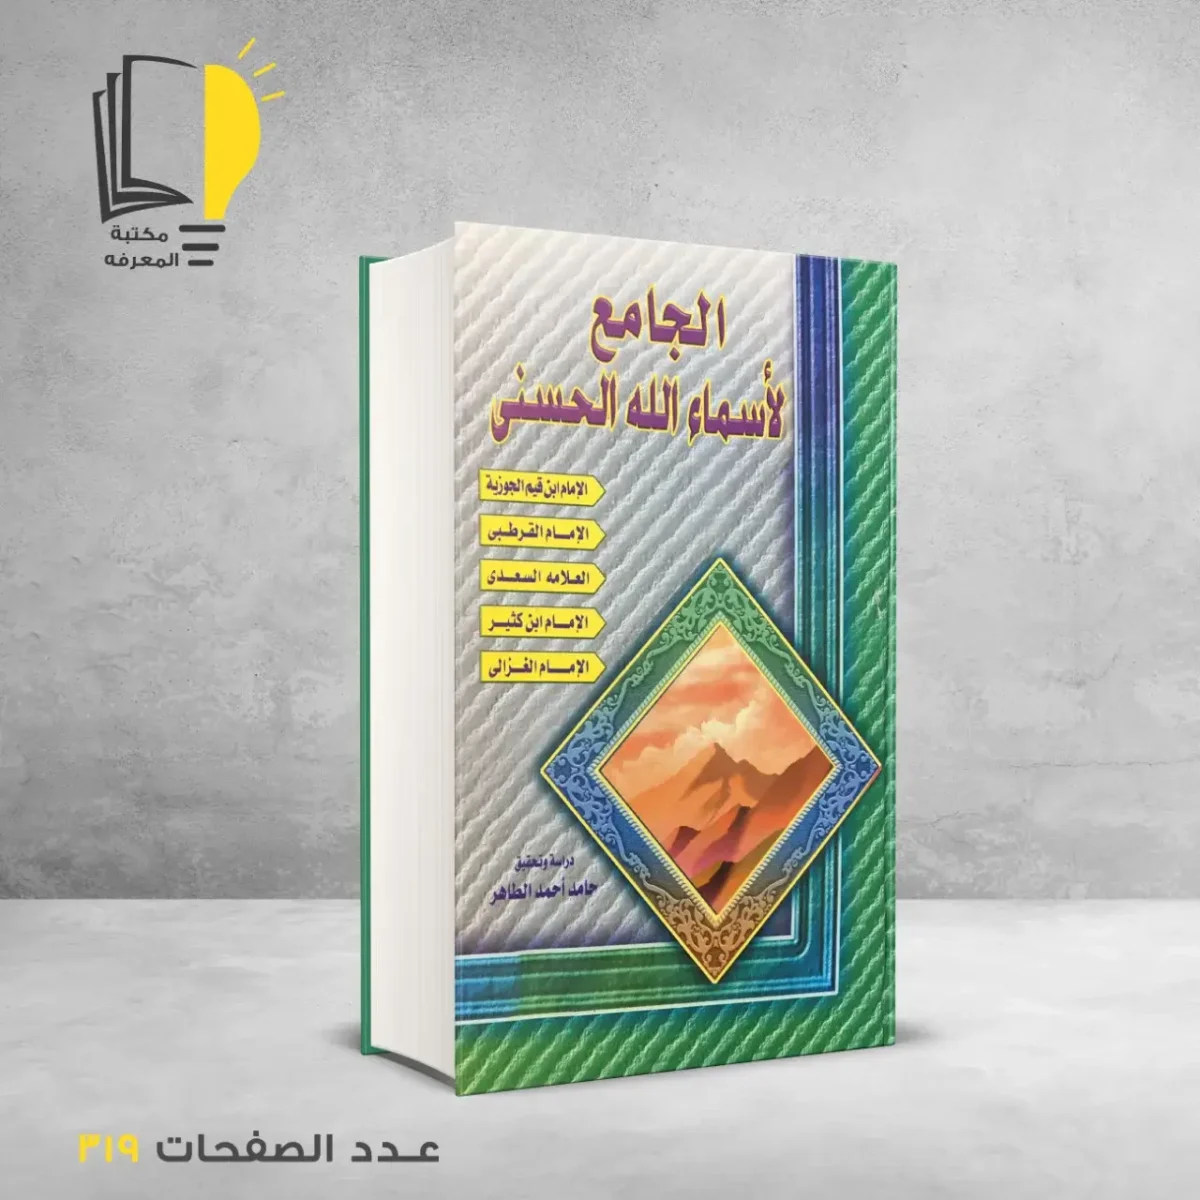 مكتبة المعرفة - كتاب الجامع لأسماء الله